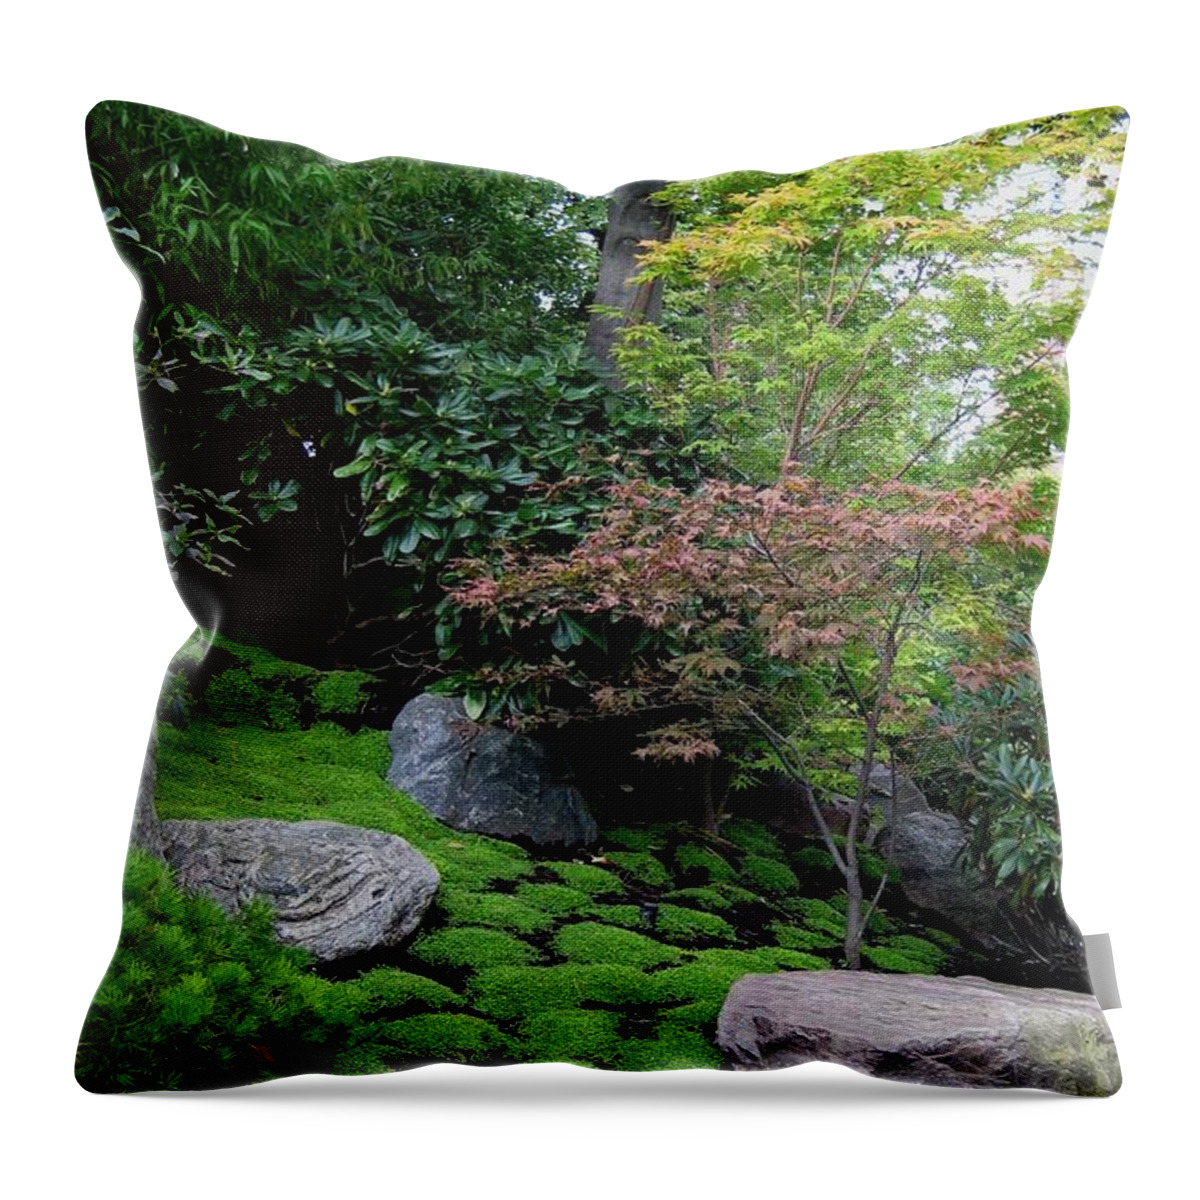 Garden Throw Pillow featuring the photograph Asian garden by Susanne Baumann